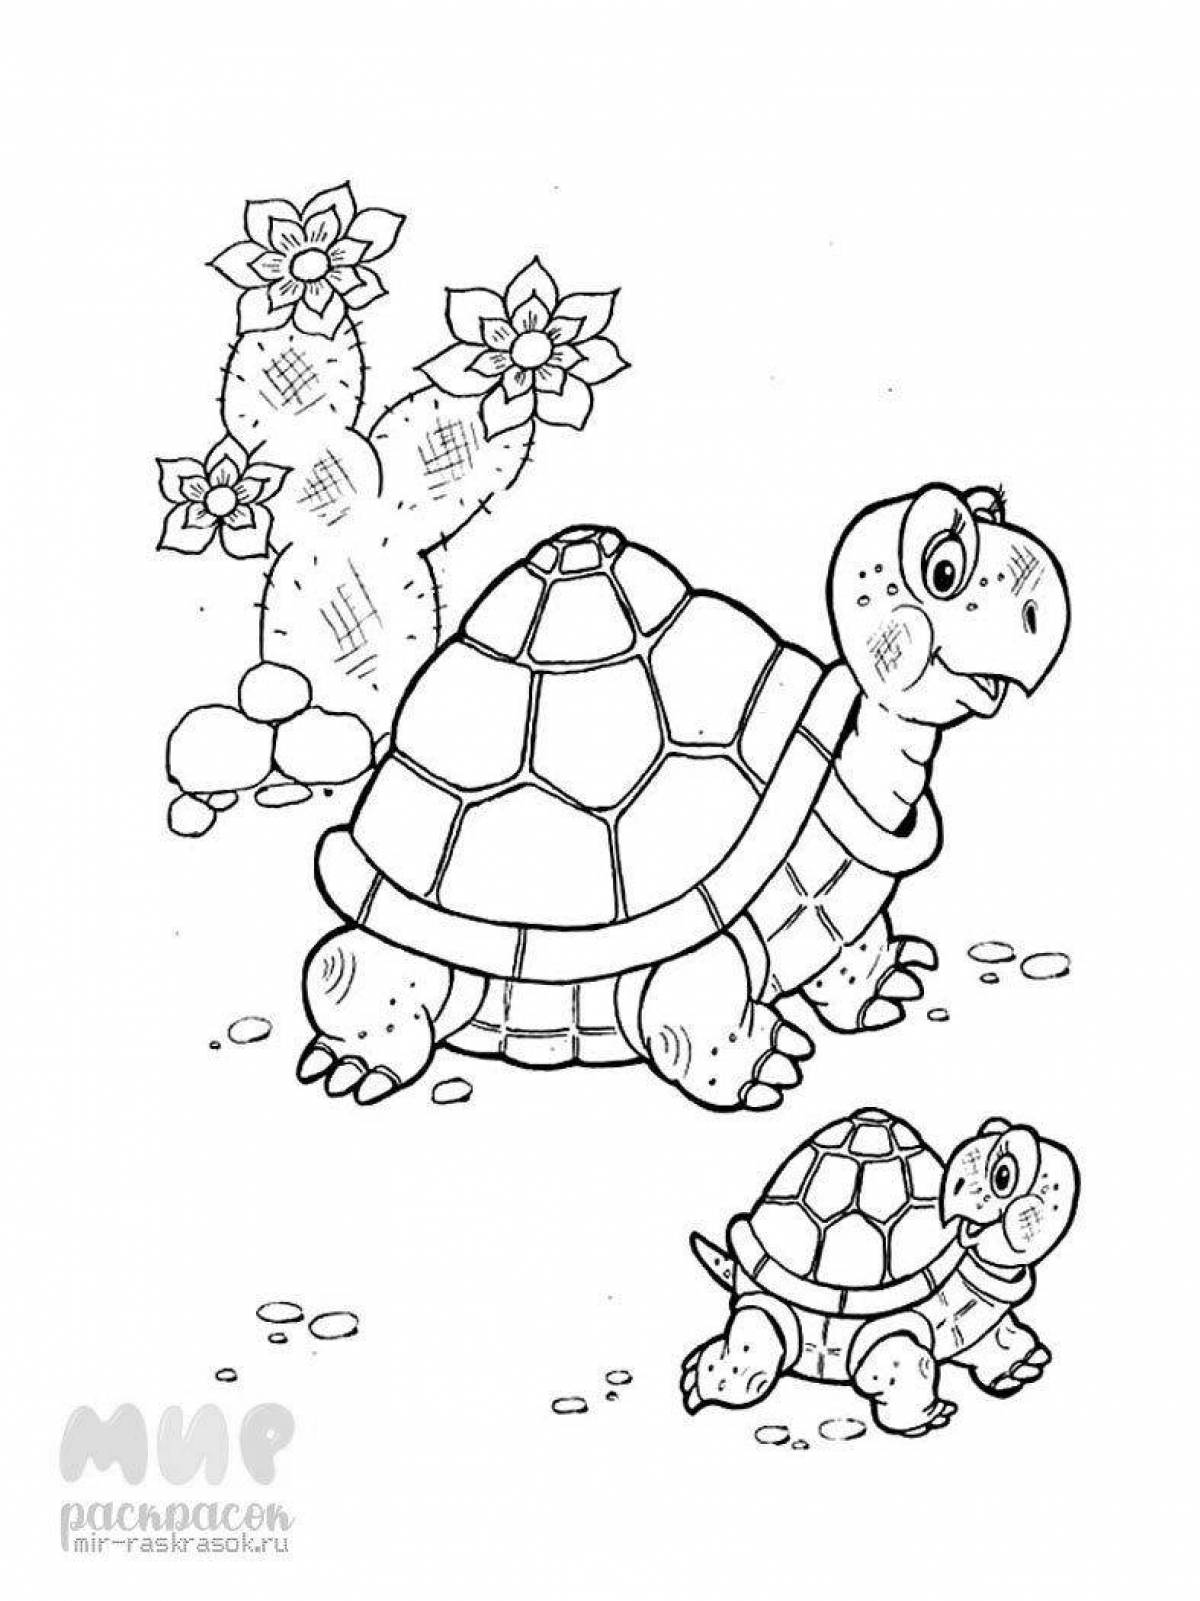 Fun turtle coloring